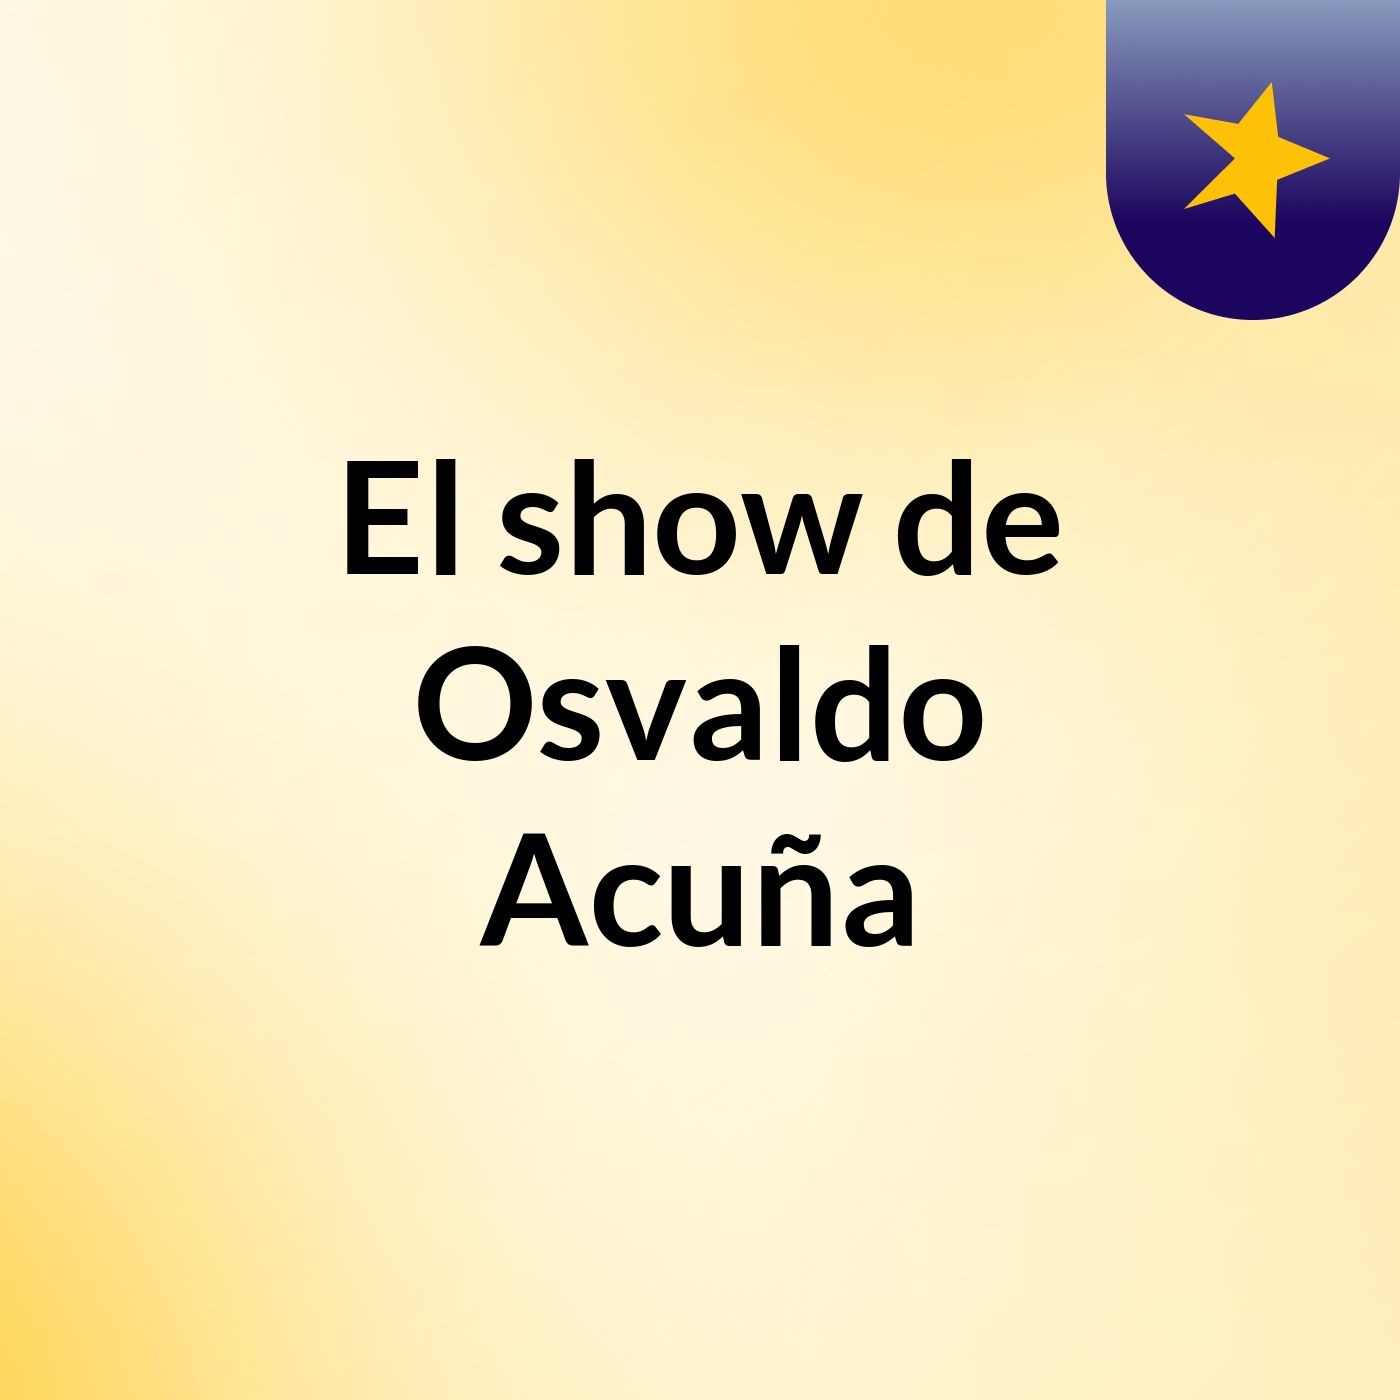 El show de Osvaldo Acuña